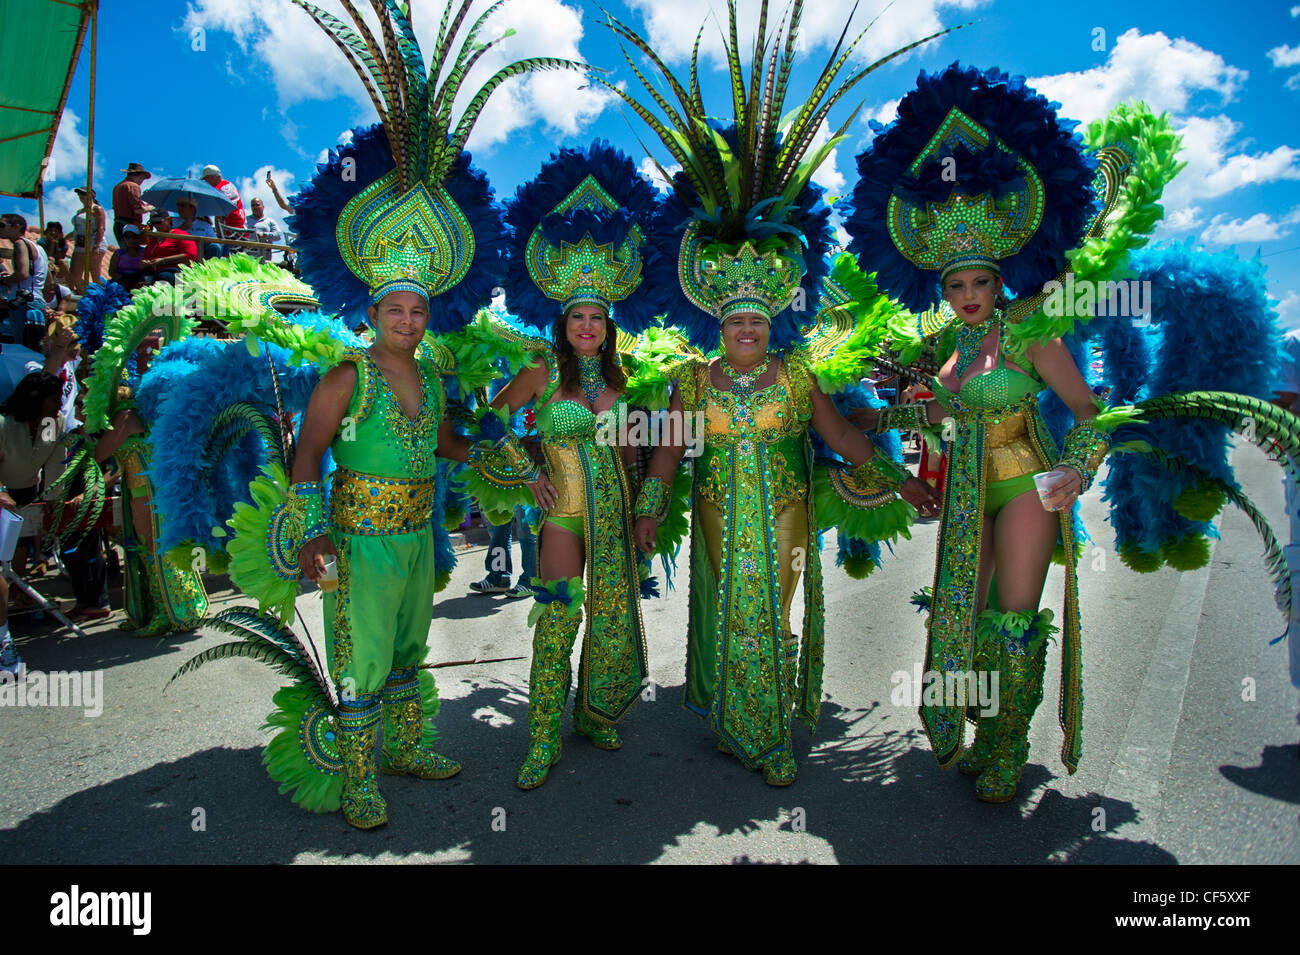 People celebrating Carnival in Aruba Stock Photo